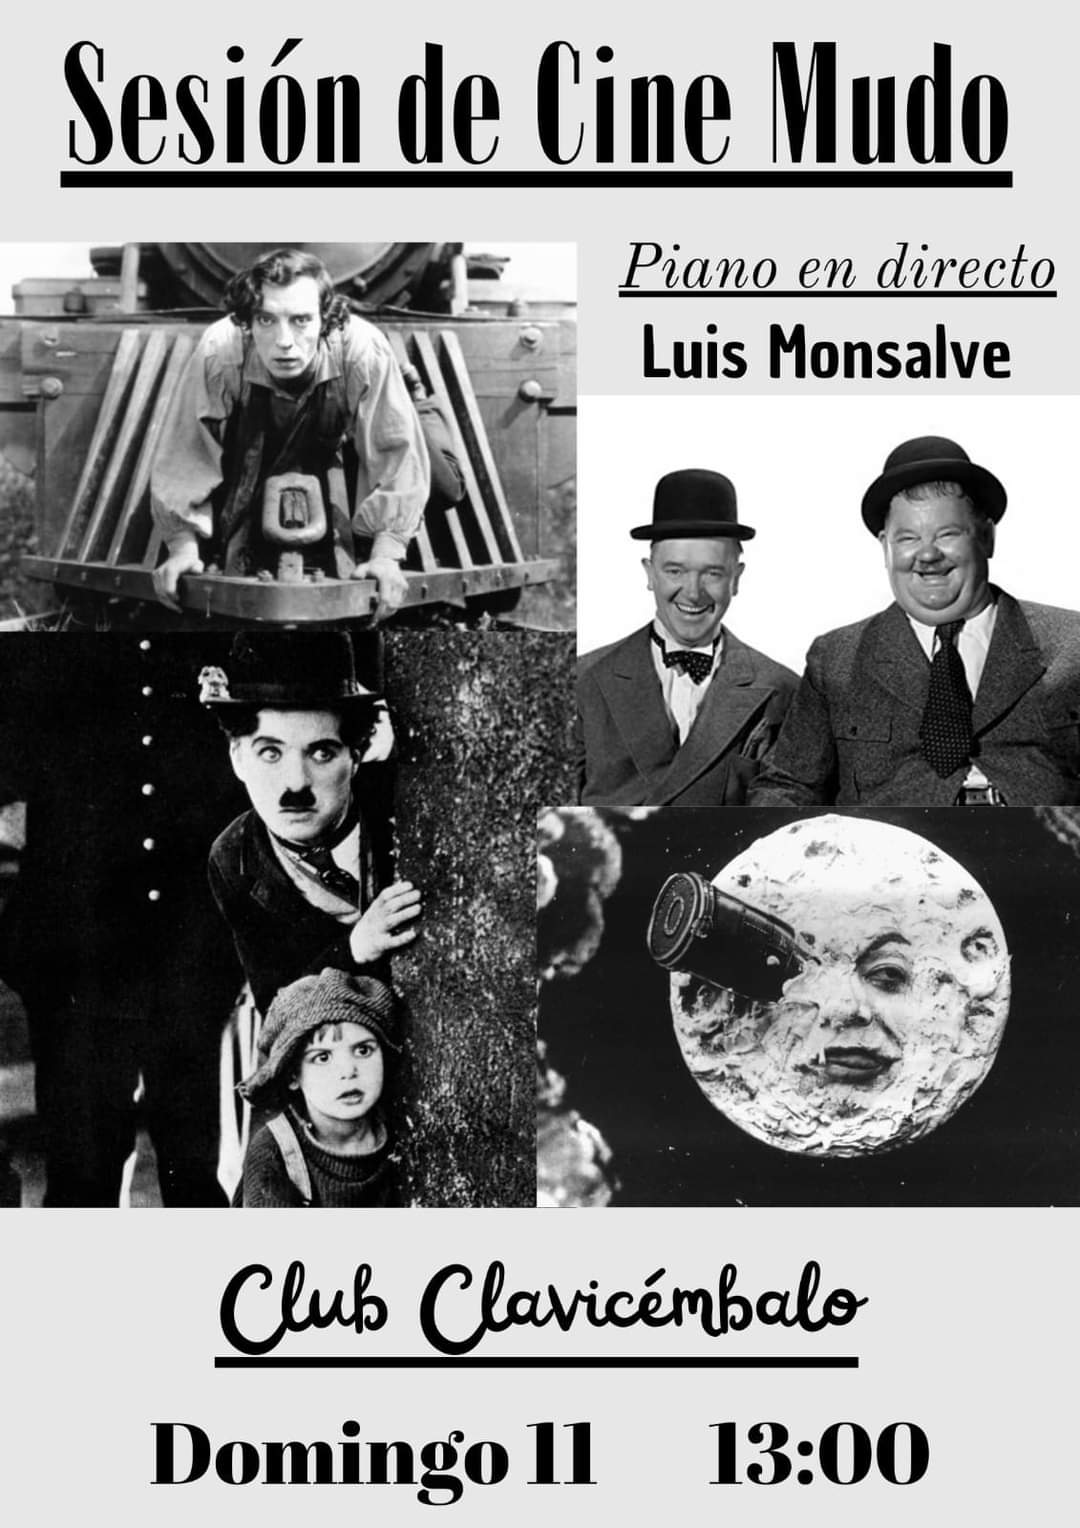 Cine mudo con Luis Monsalve ao piano en directo